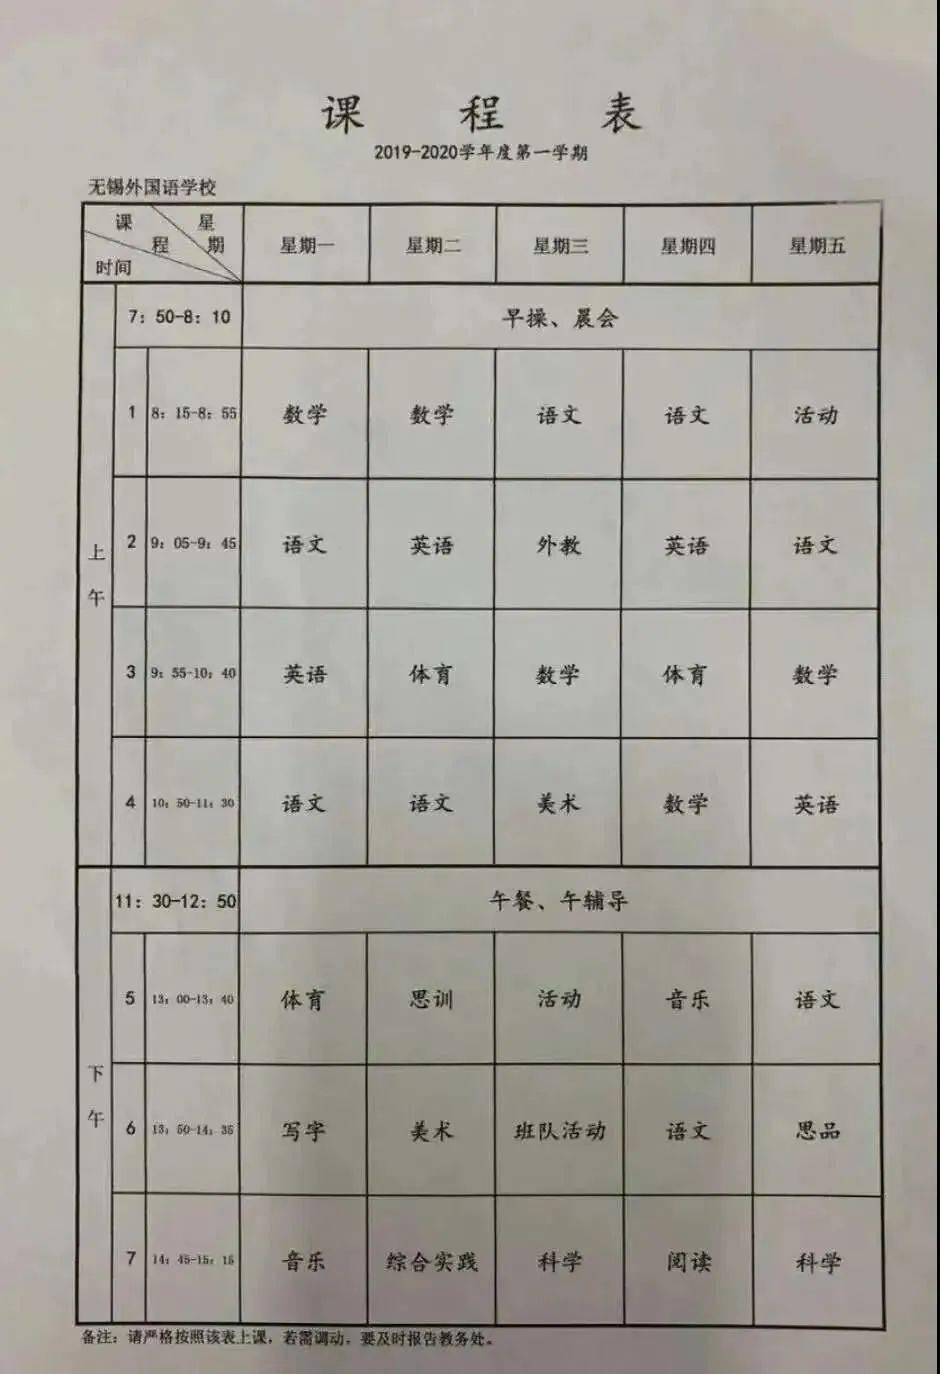 上海微校课程表图片